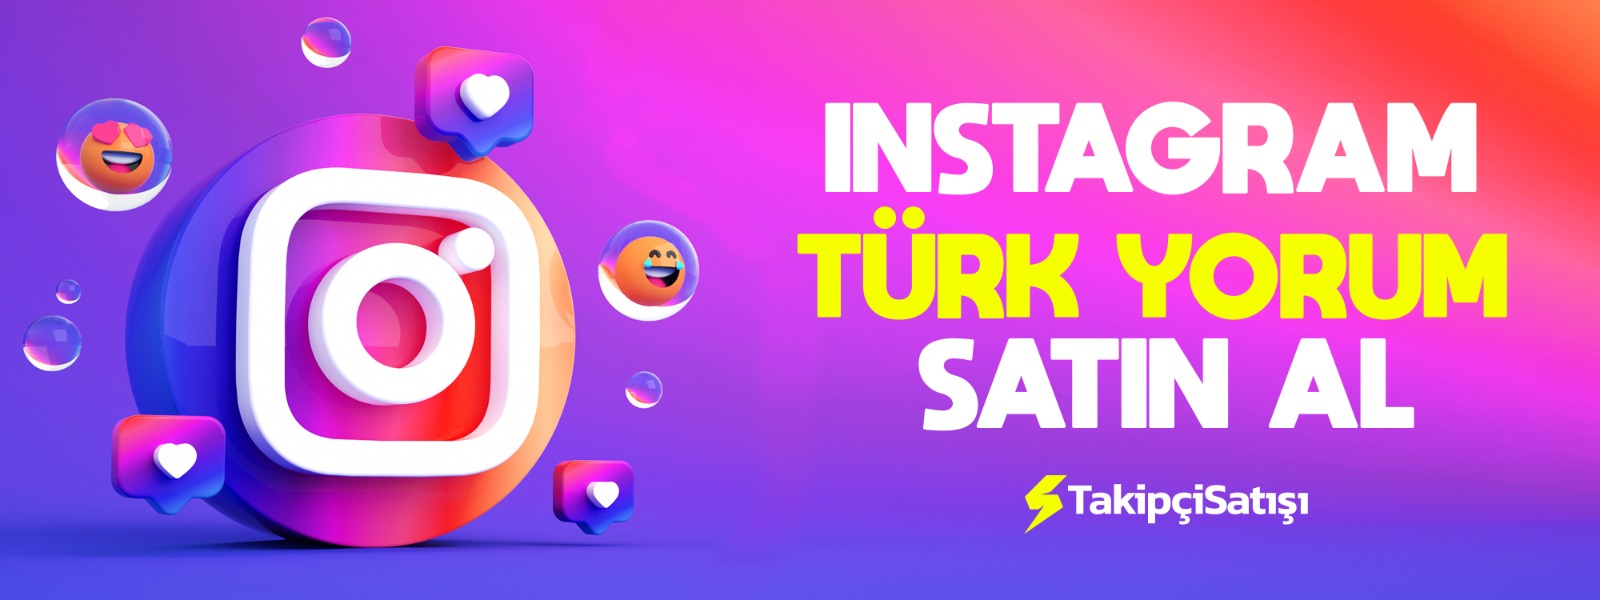 Instagram Türk yorum satın al